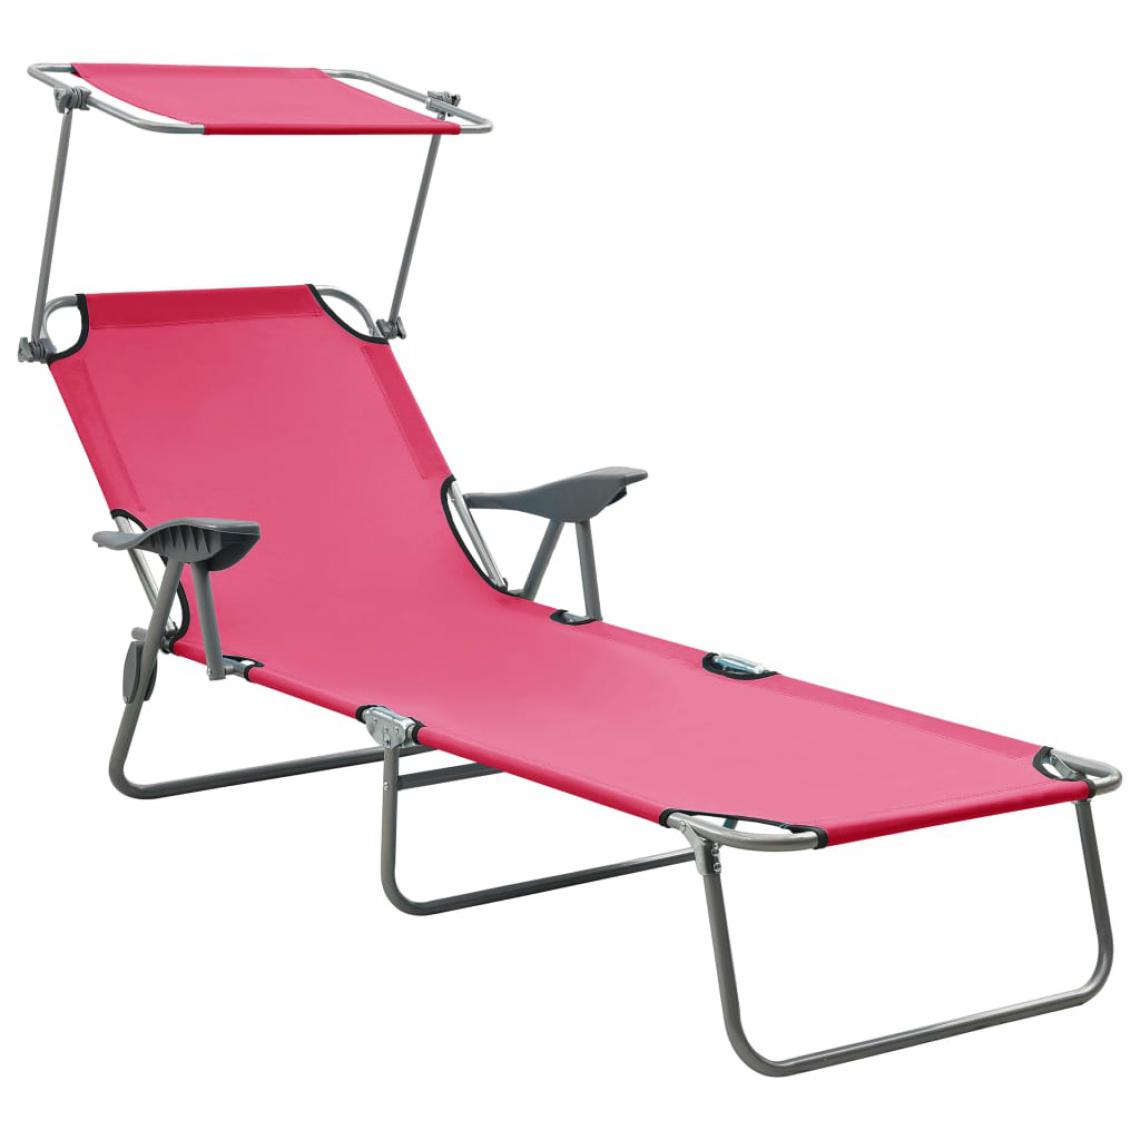 Vidaxl - vidaXL Chaise longue avec auvent Acier Rose - Transats, chaises longues